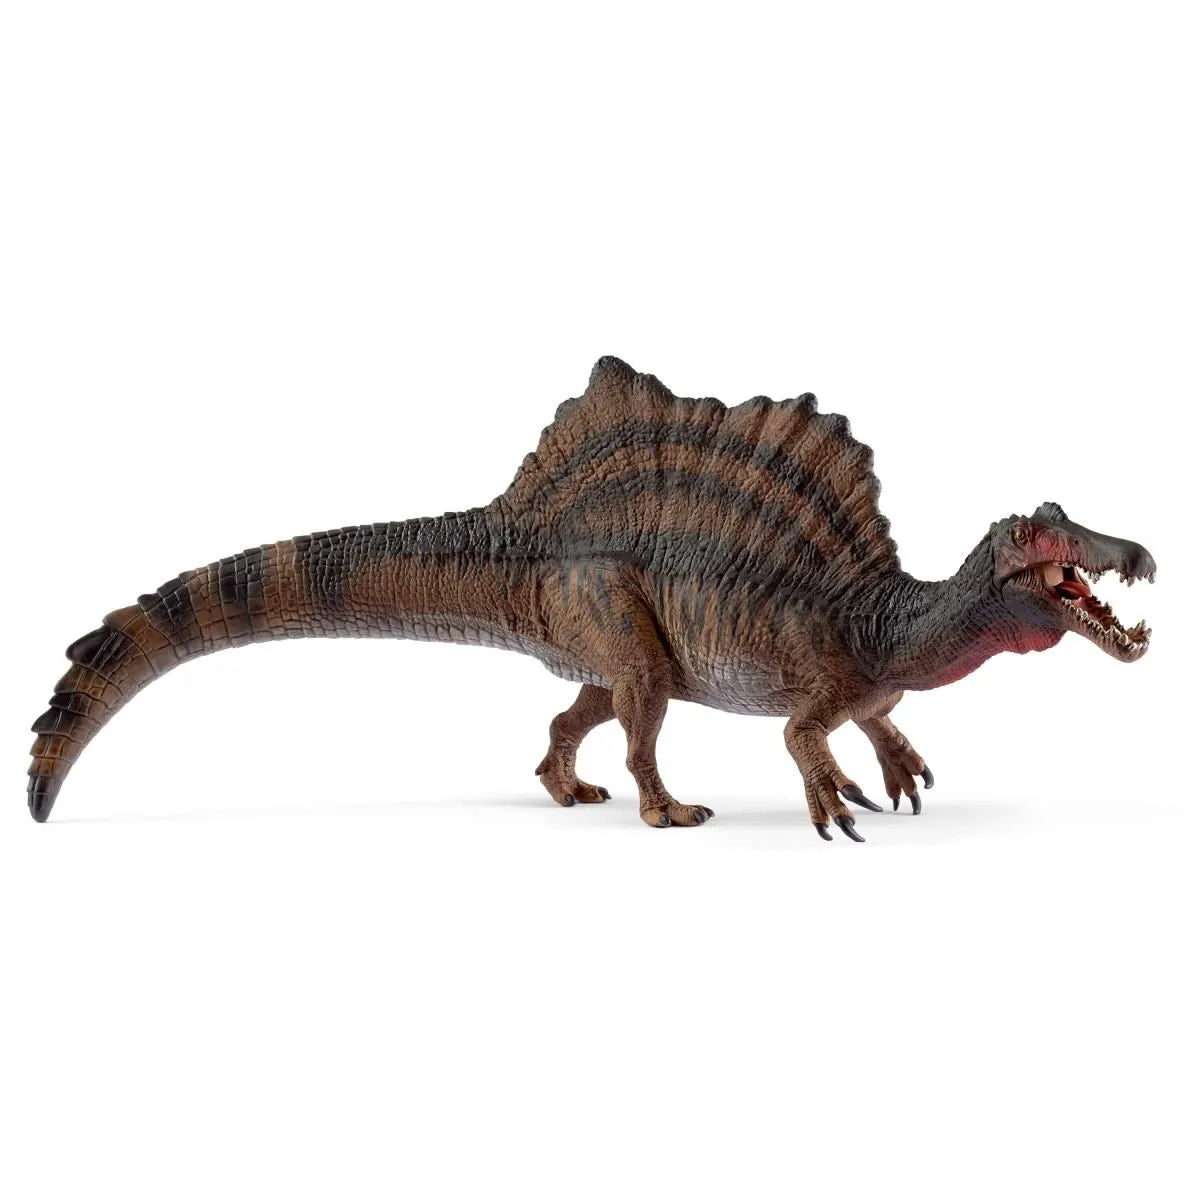 Schleich Dinosaurs Spinosaurus 15009